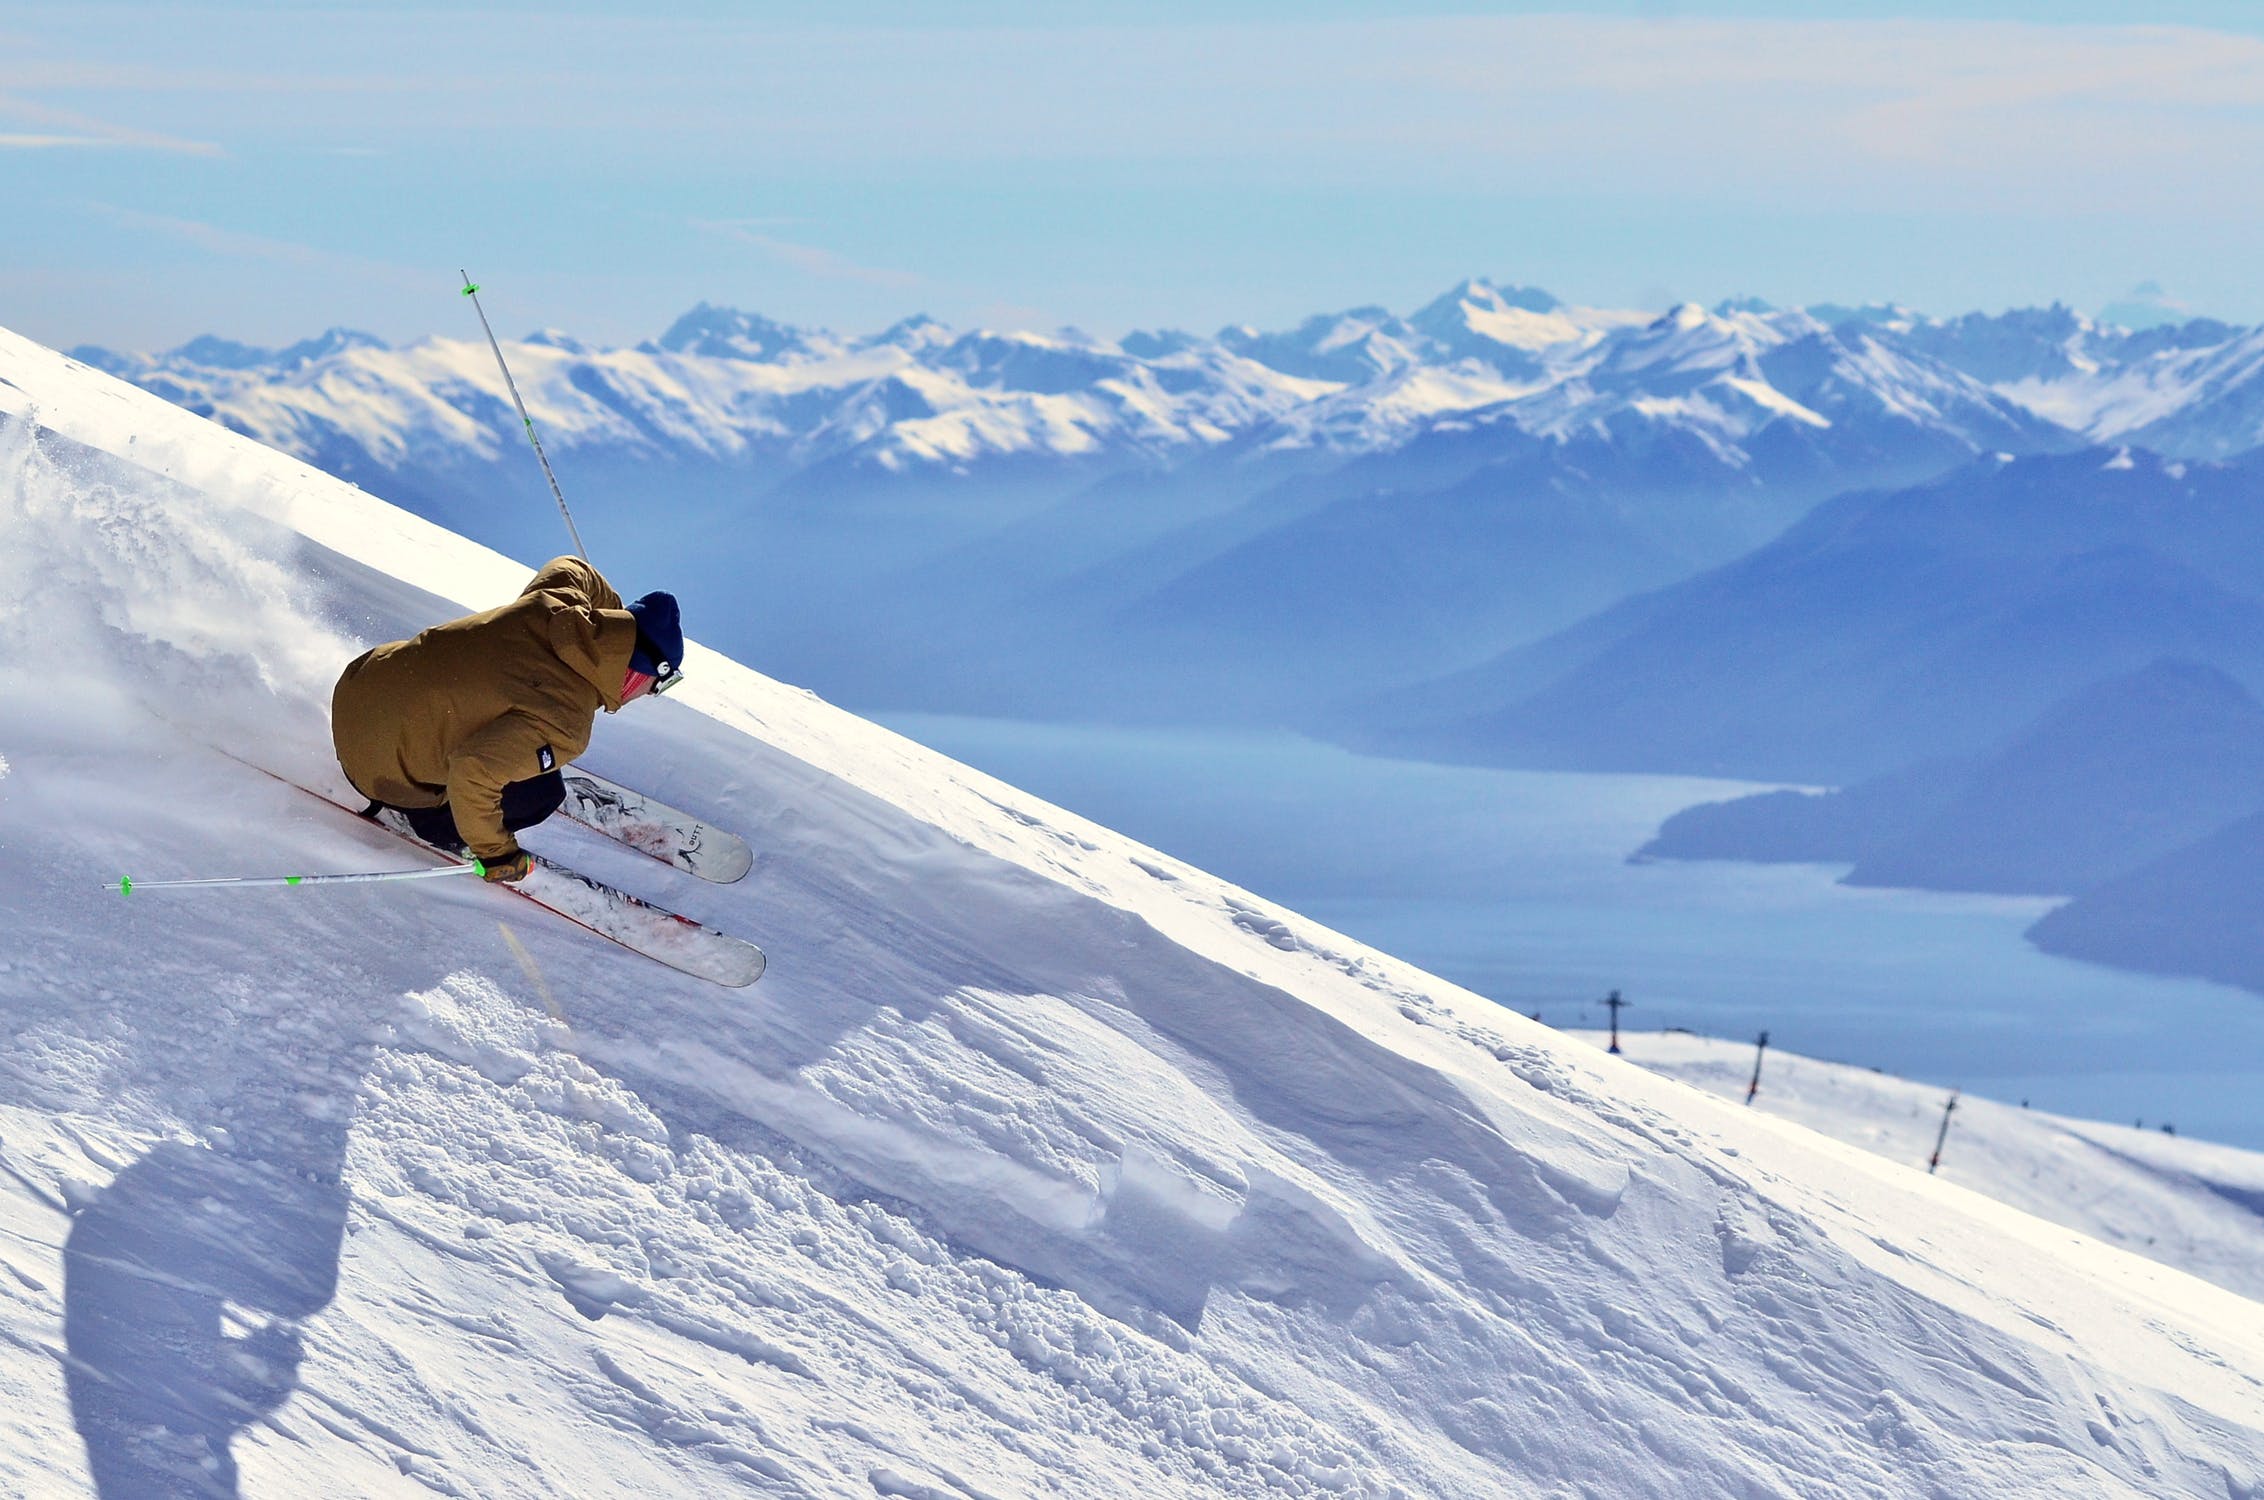 Foto di un ragazzo mentre sta sciando in una pista da scii su montagne coperte completamente di neve